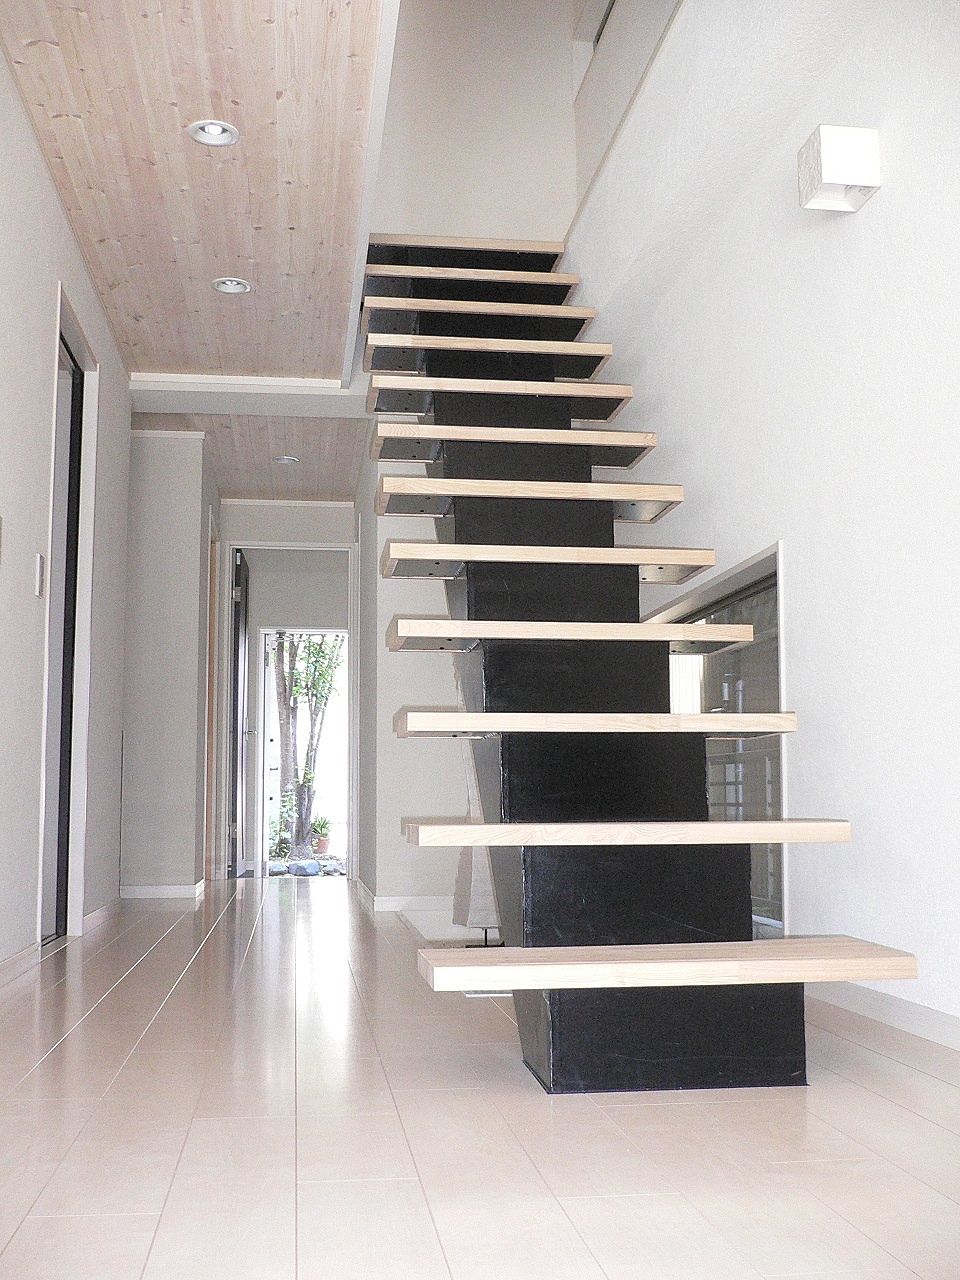 
洗練された無駄のない空間。宙を歩いているような階段。モノトーンに色調が映えるデザイン。